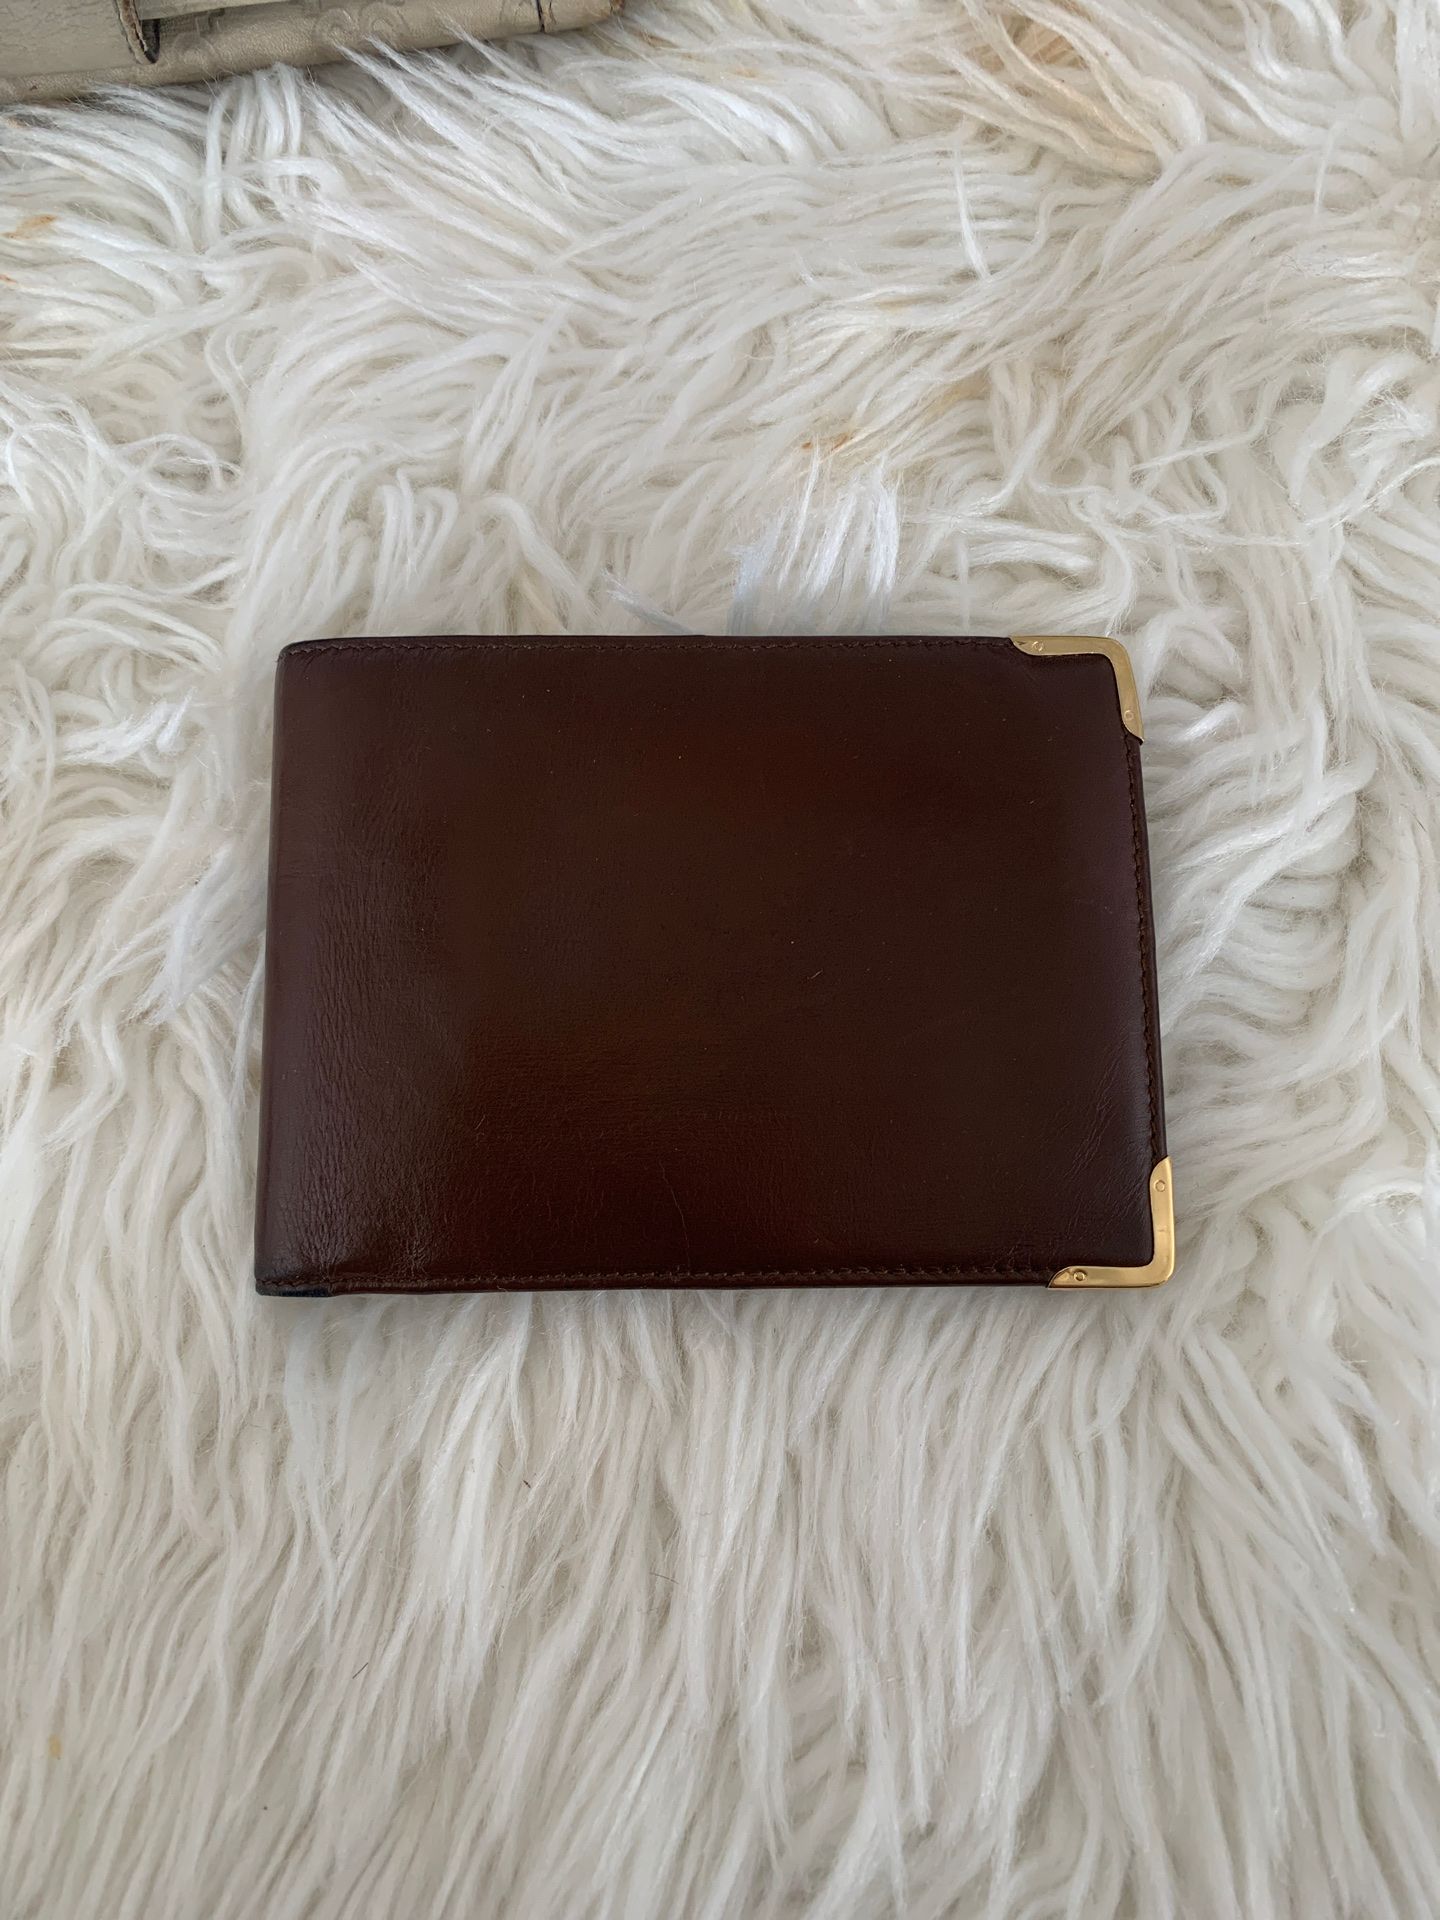 Authentic Gucci men’s wallet